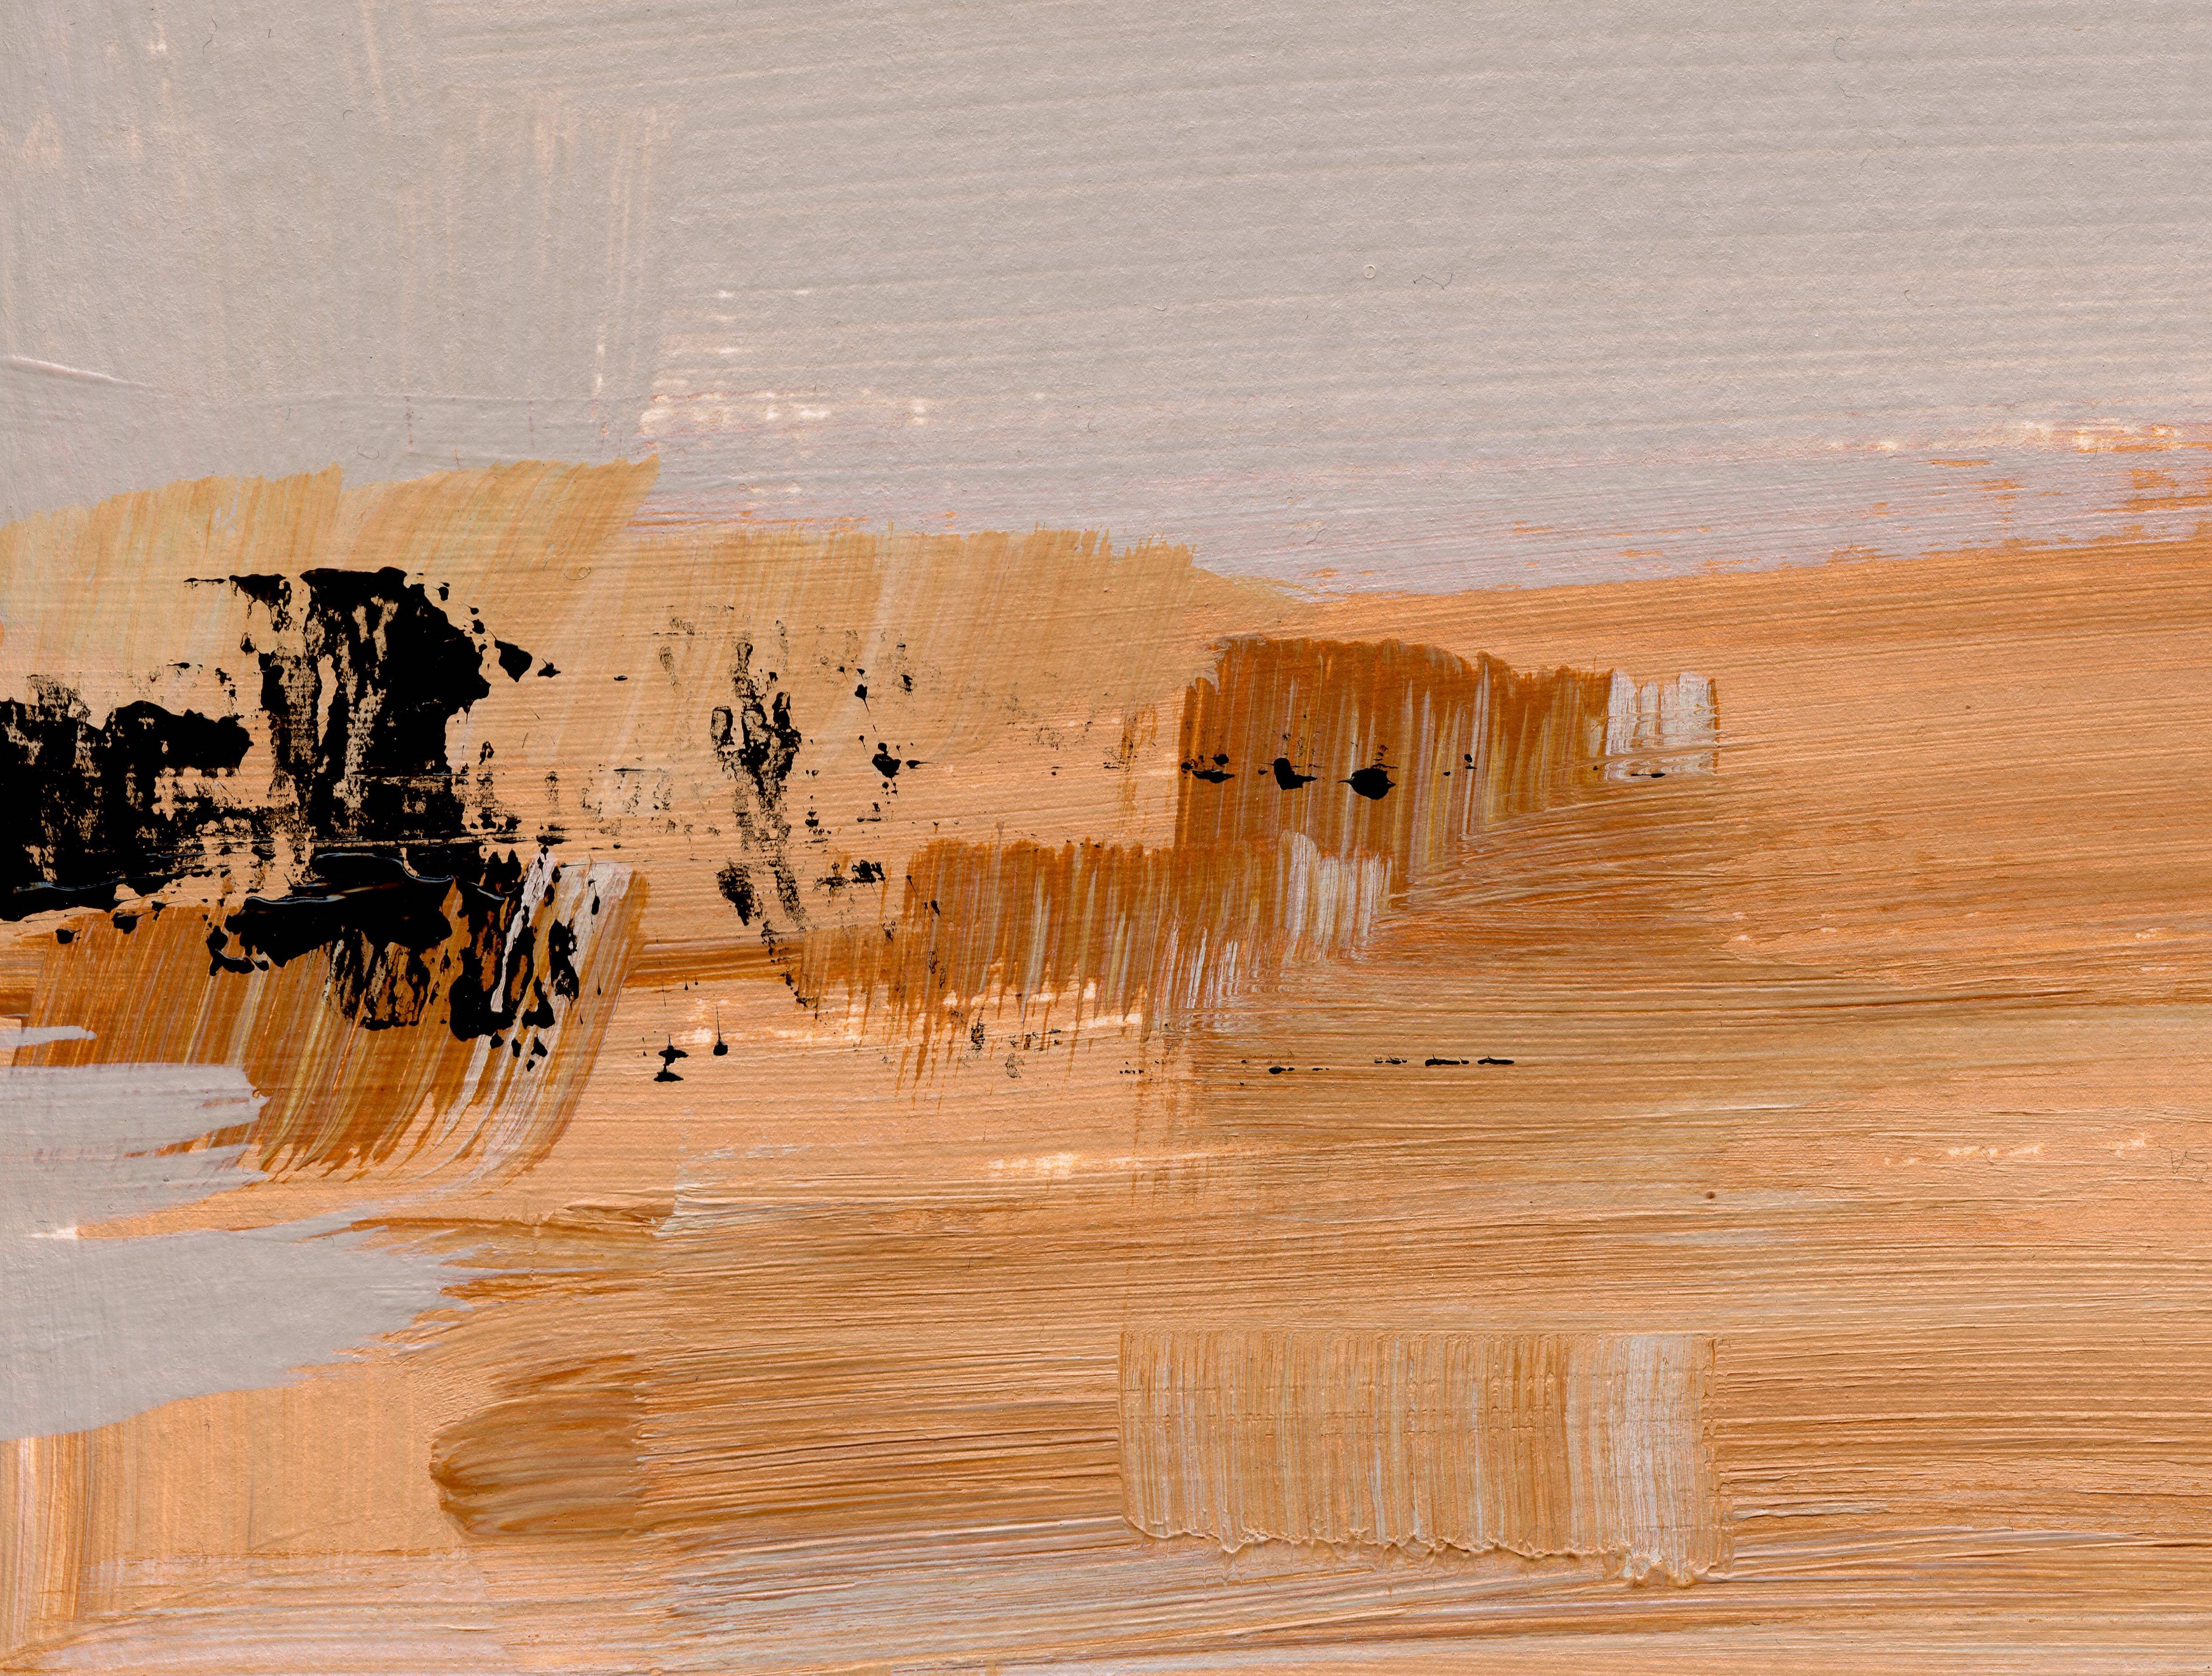 Neutrale Wüste II, Original zeitgenössische abstrakte Landschaft, Acrylgemälde – Painting von April Moffatt